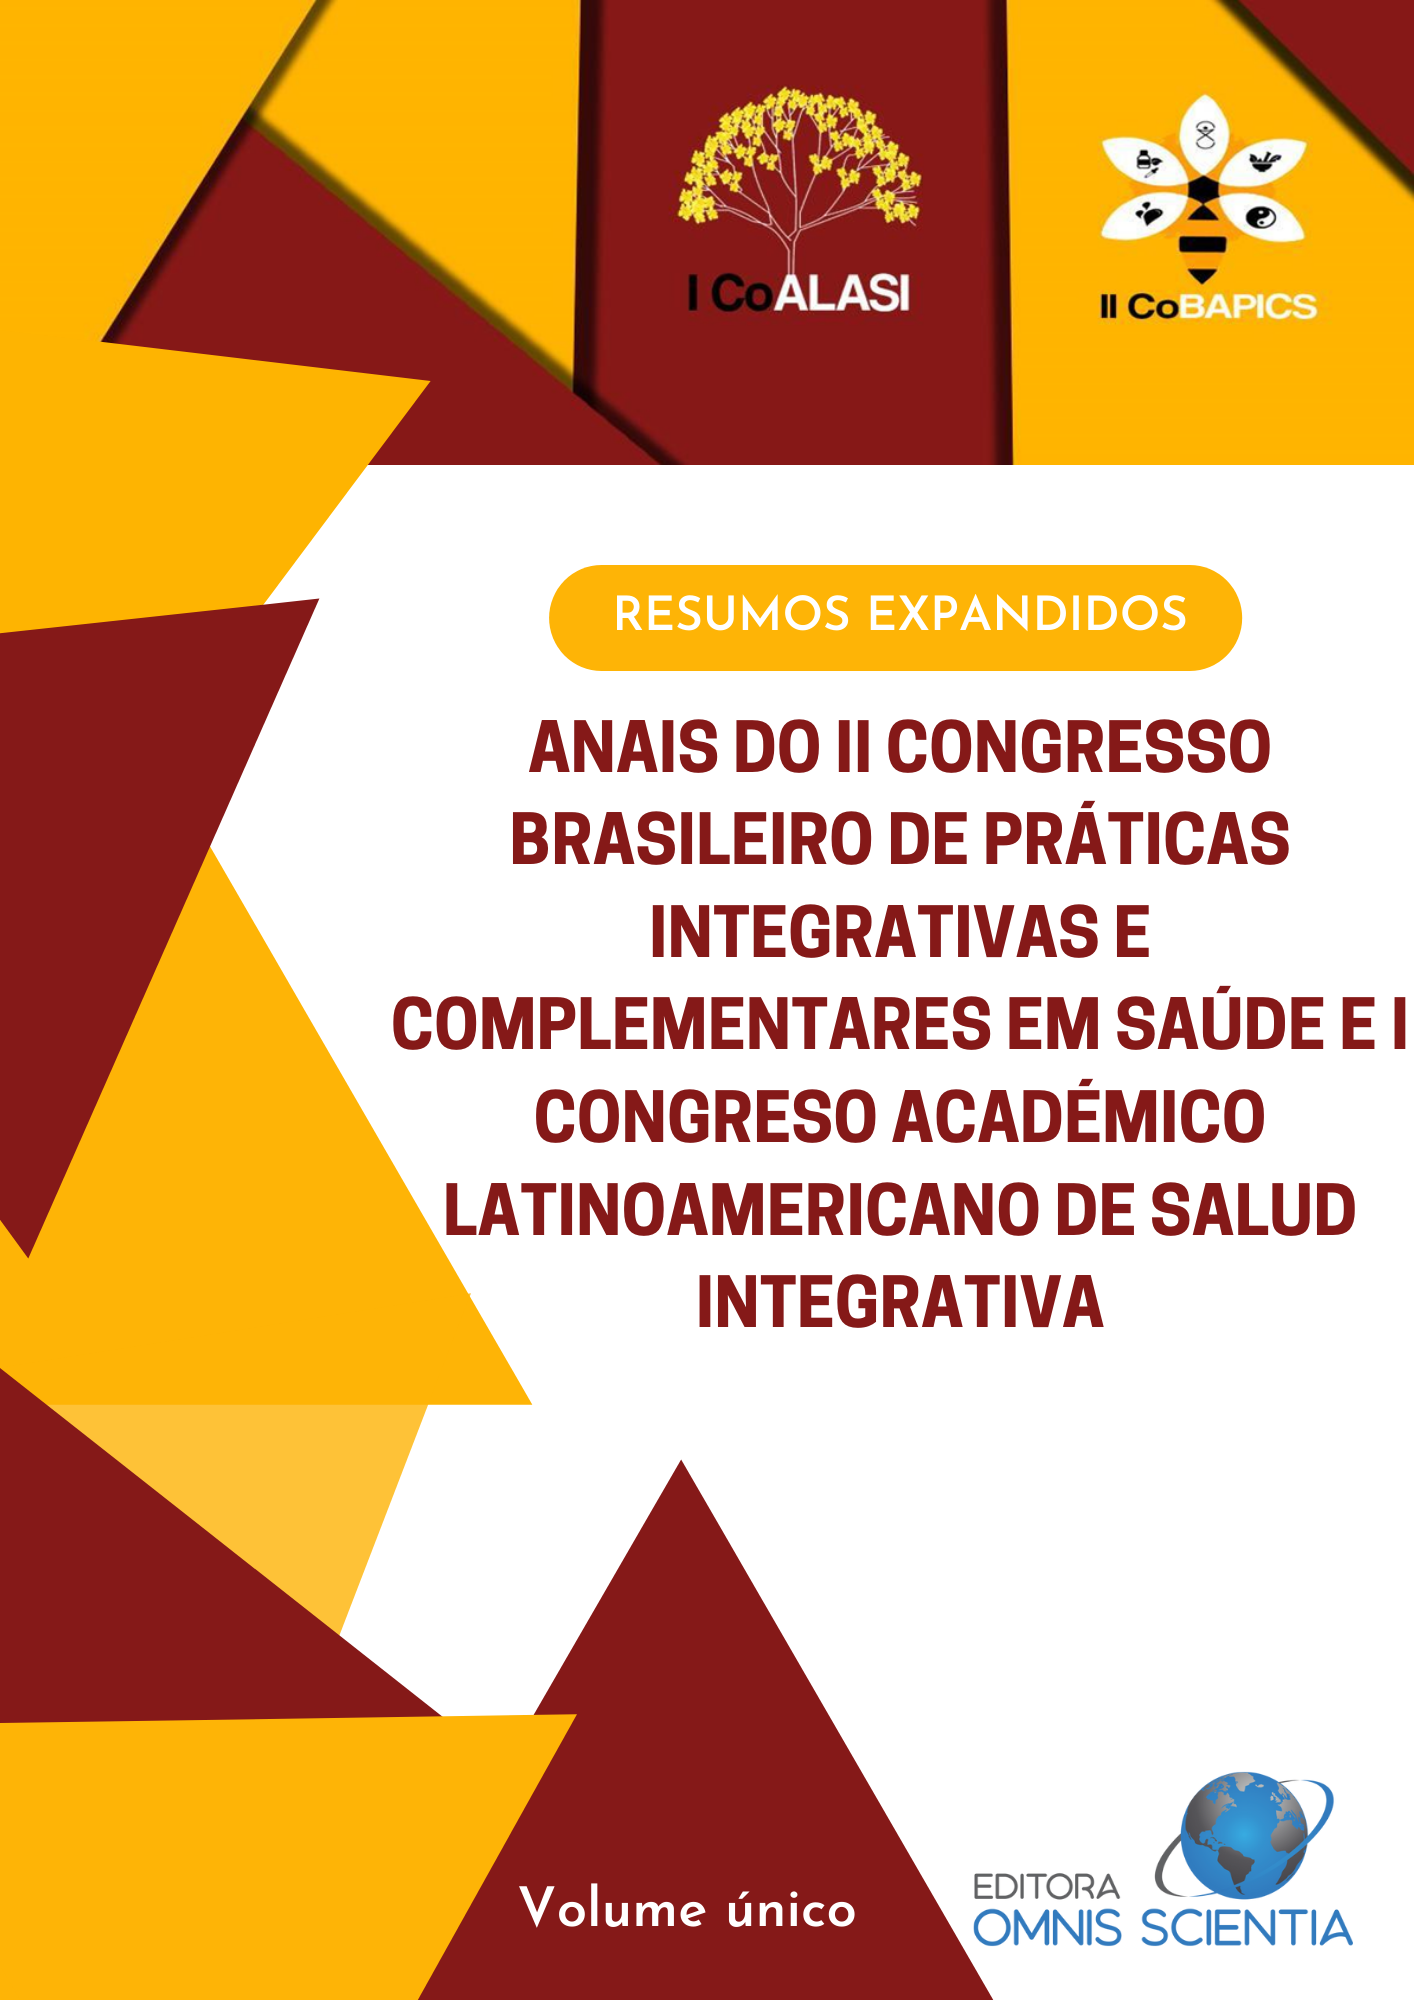 ANAIS DO II CONGRESSO BRASILEIRO DE PRÁTICAS INTEGRATIVAS E COMPLEMENTARES EM SAÚDE E I CONGRESO ACADÉMICO LATINOAMERICANO DE SAULD INTEGRATIVA